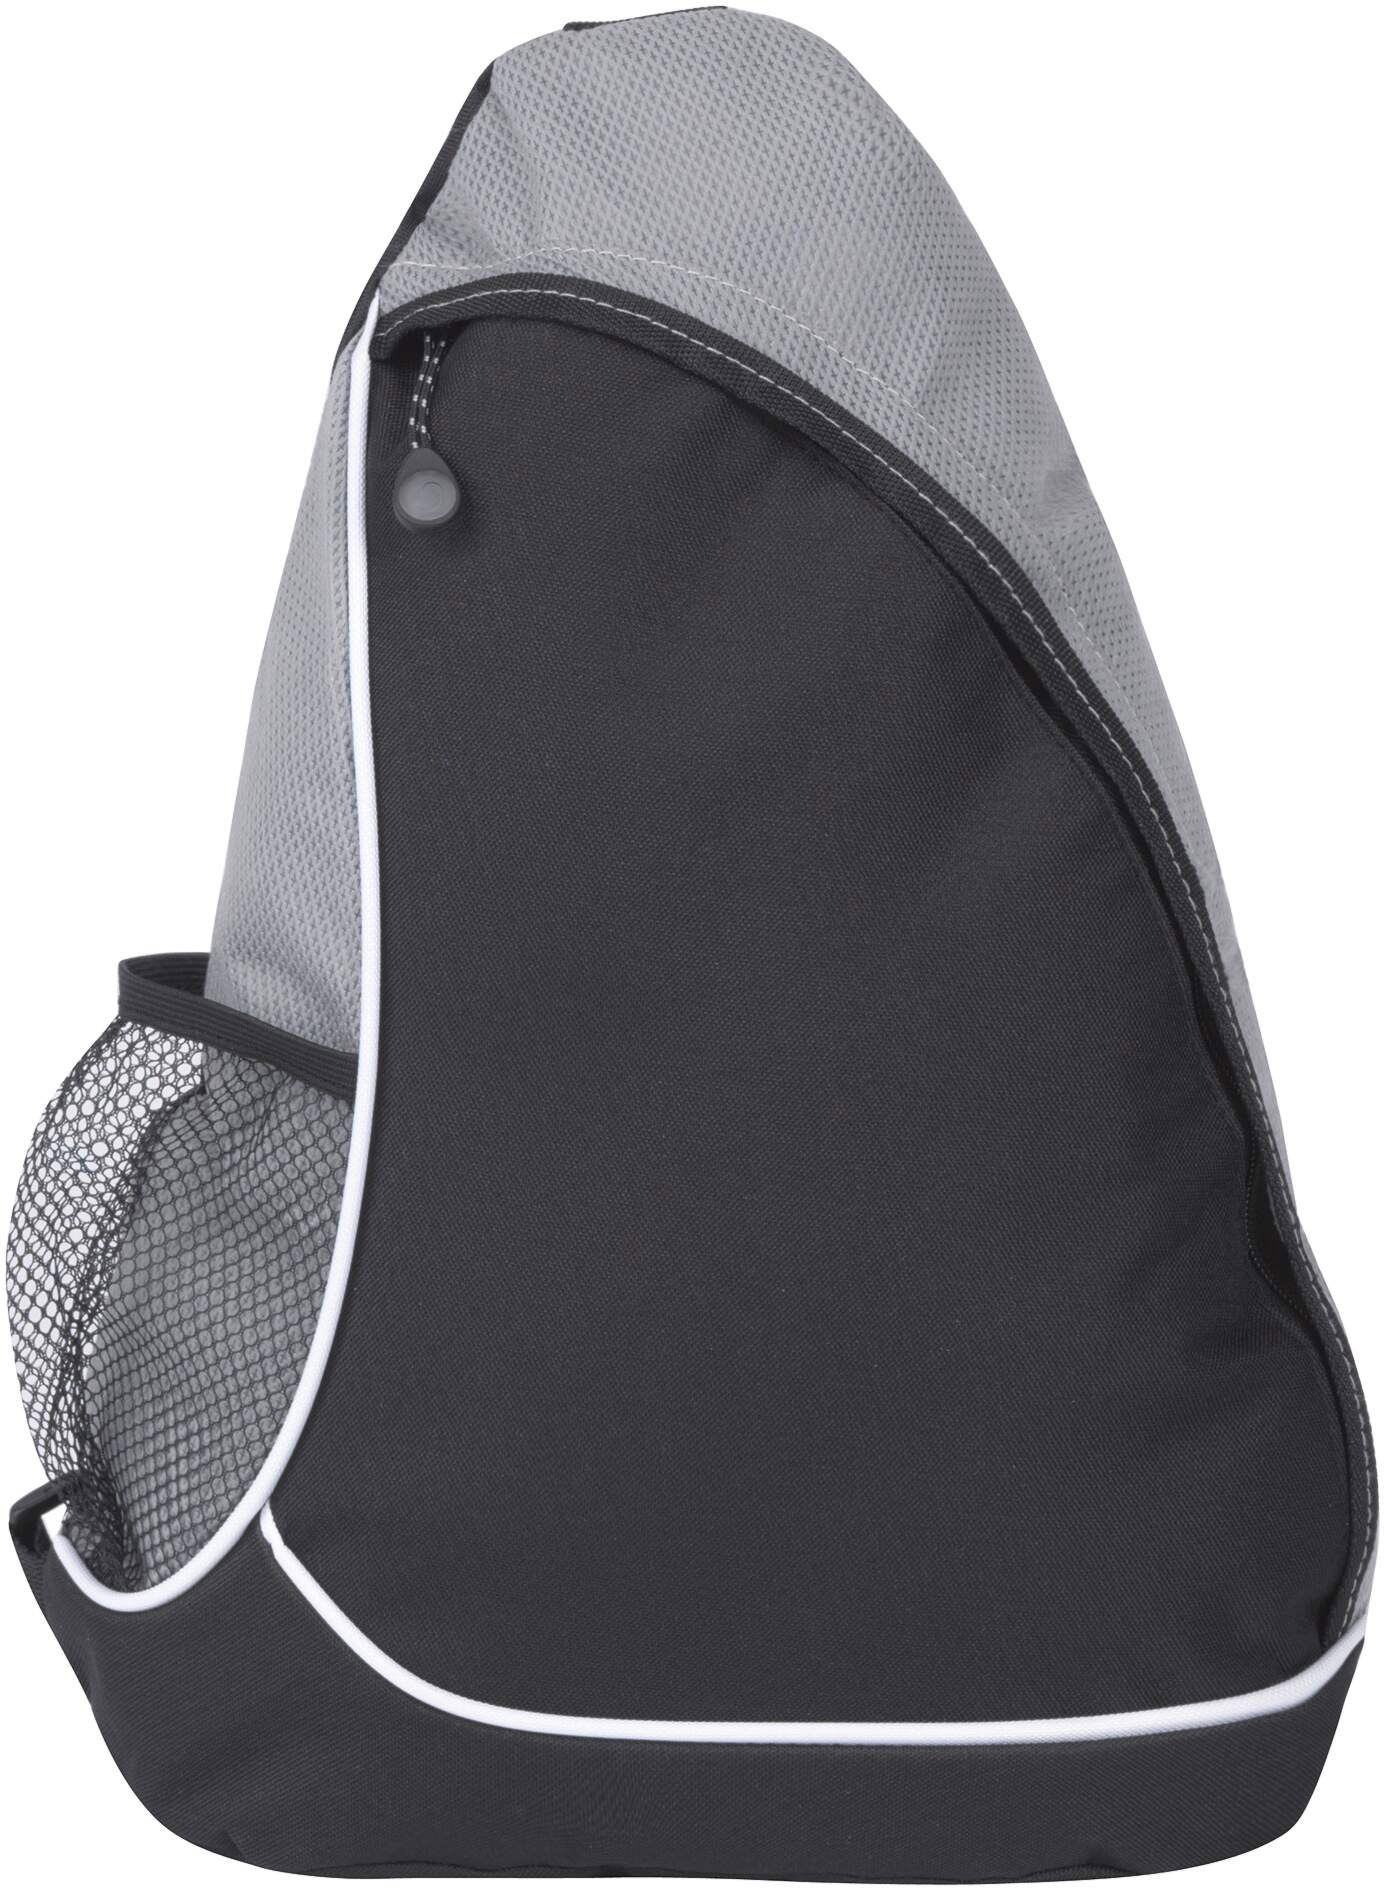 Рюкзак "Sling" на одно плечо, черный/серый